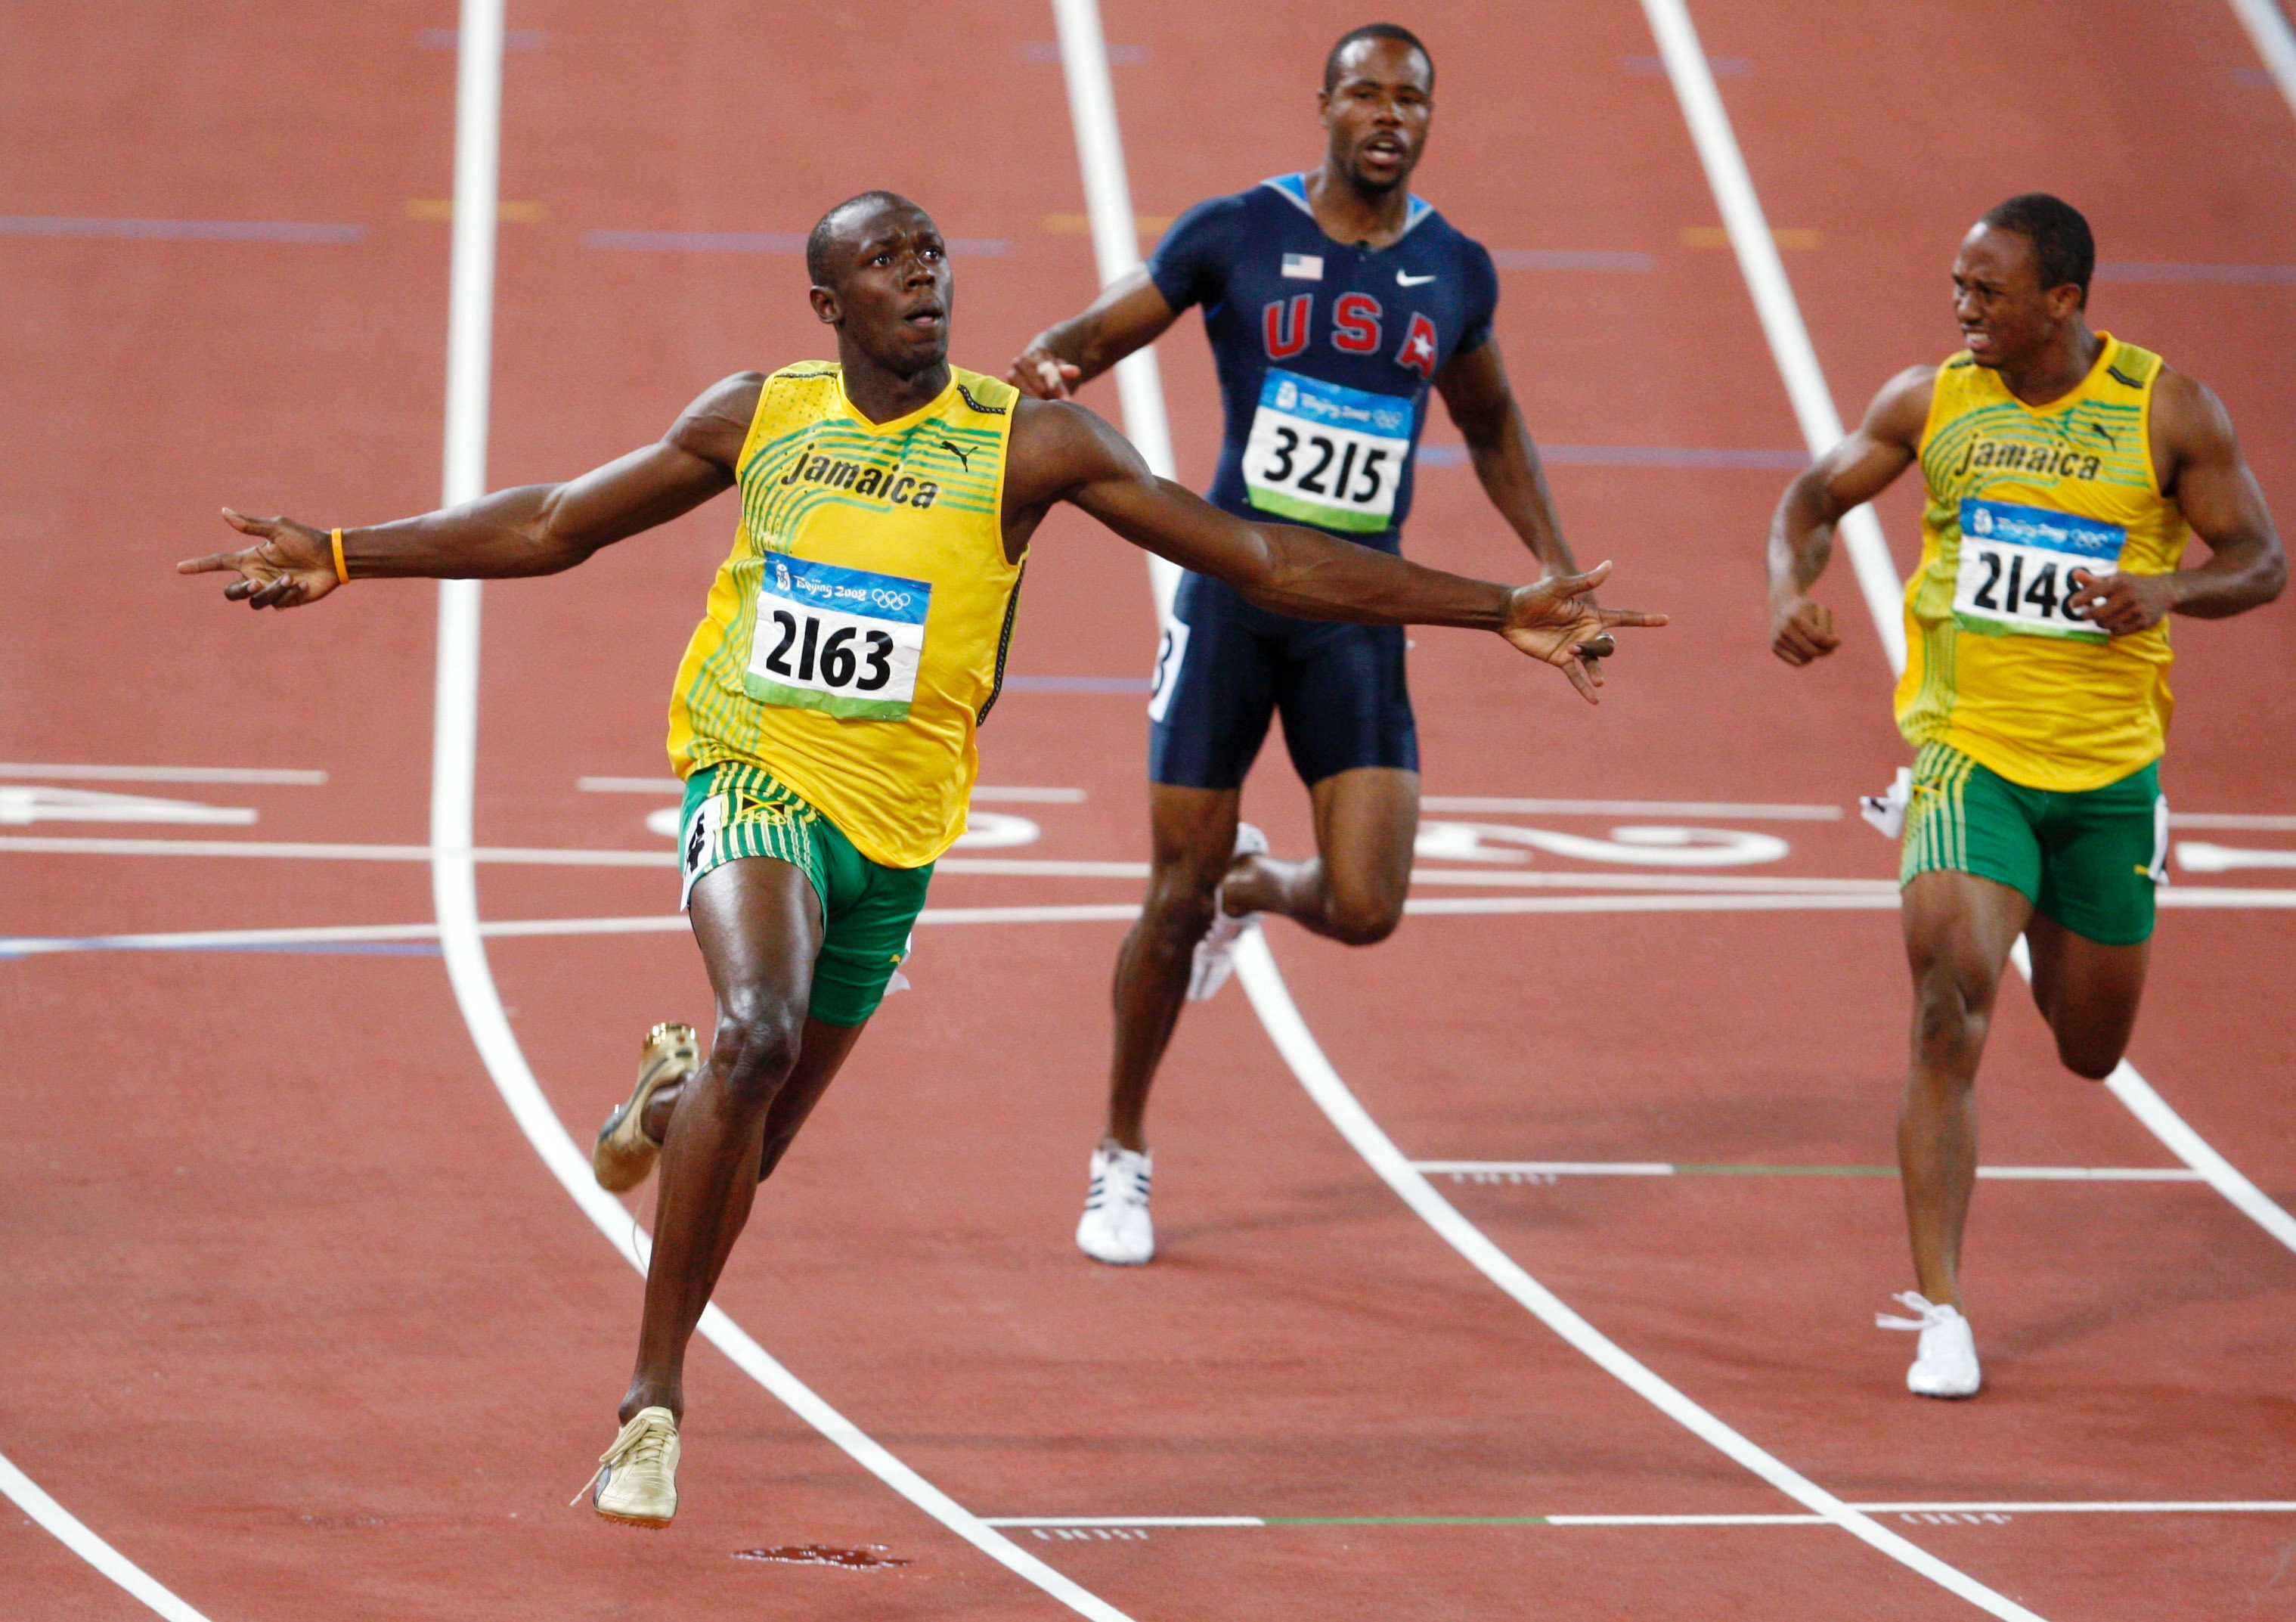 Игры бег 100. Футбол на Олимпийских играх 2008. Usain Bolt 2008 Olympics go Jamaica. Usain Bolt Olympics. Usain Bolt 2008 Olympics go Jamaica photos.